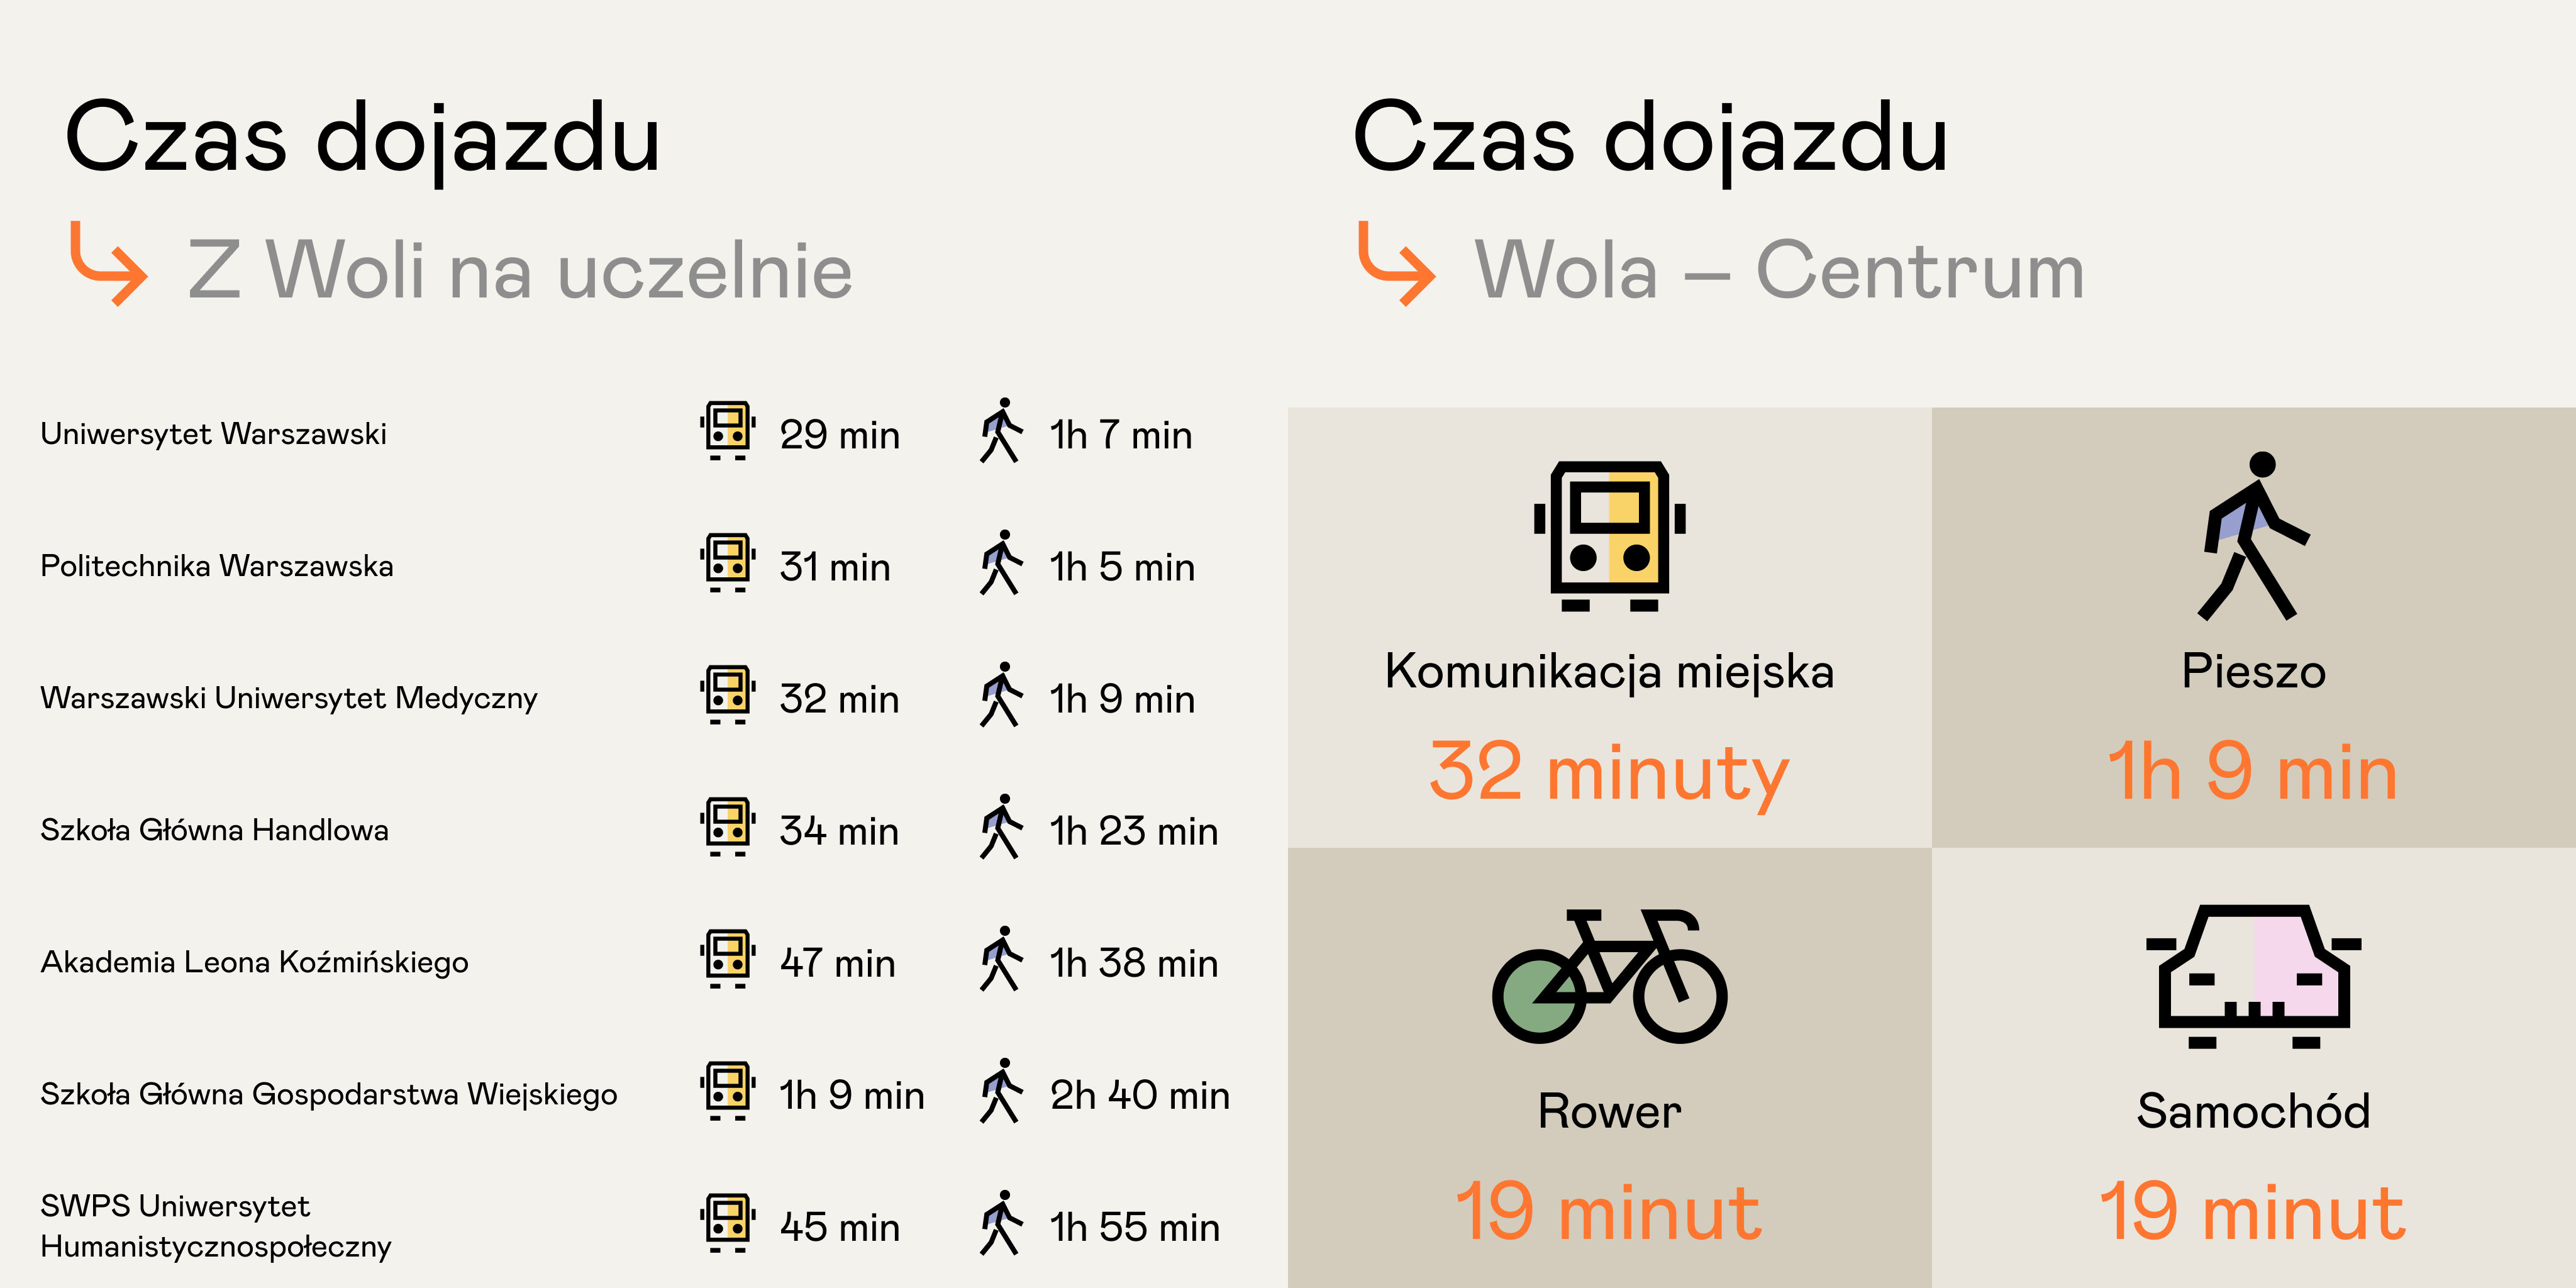 Czas dotarcia z Woli w Warszawie do centrum oraz wybranych uczelni wyższych